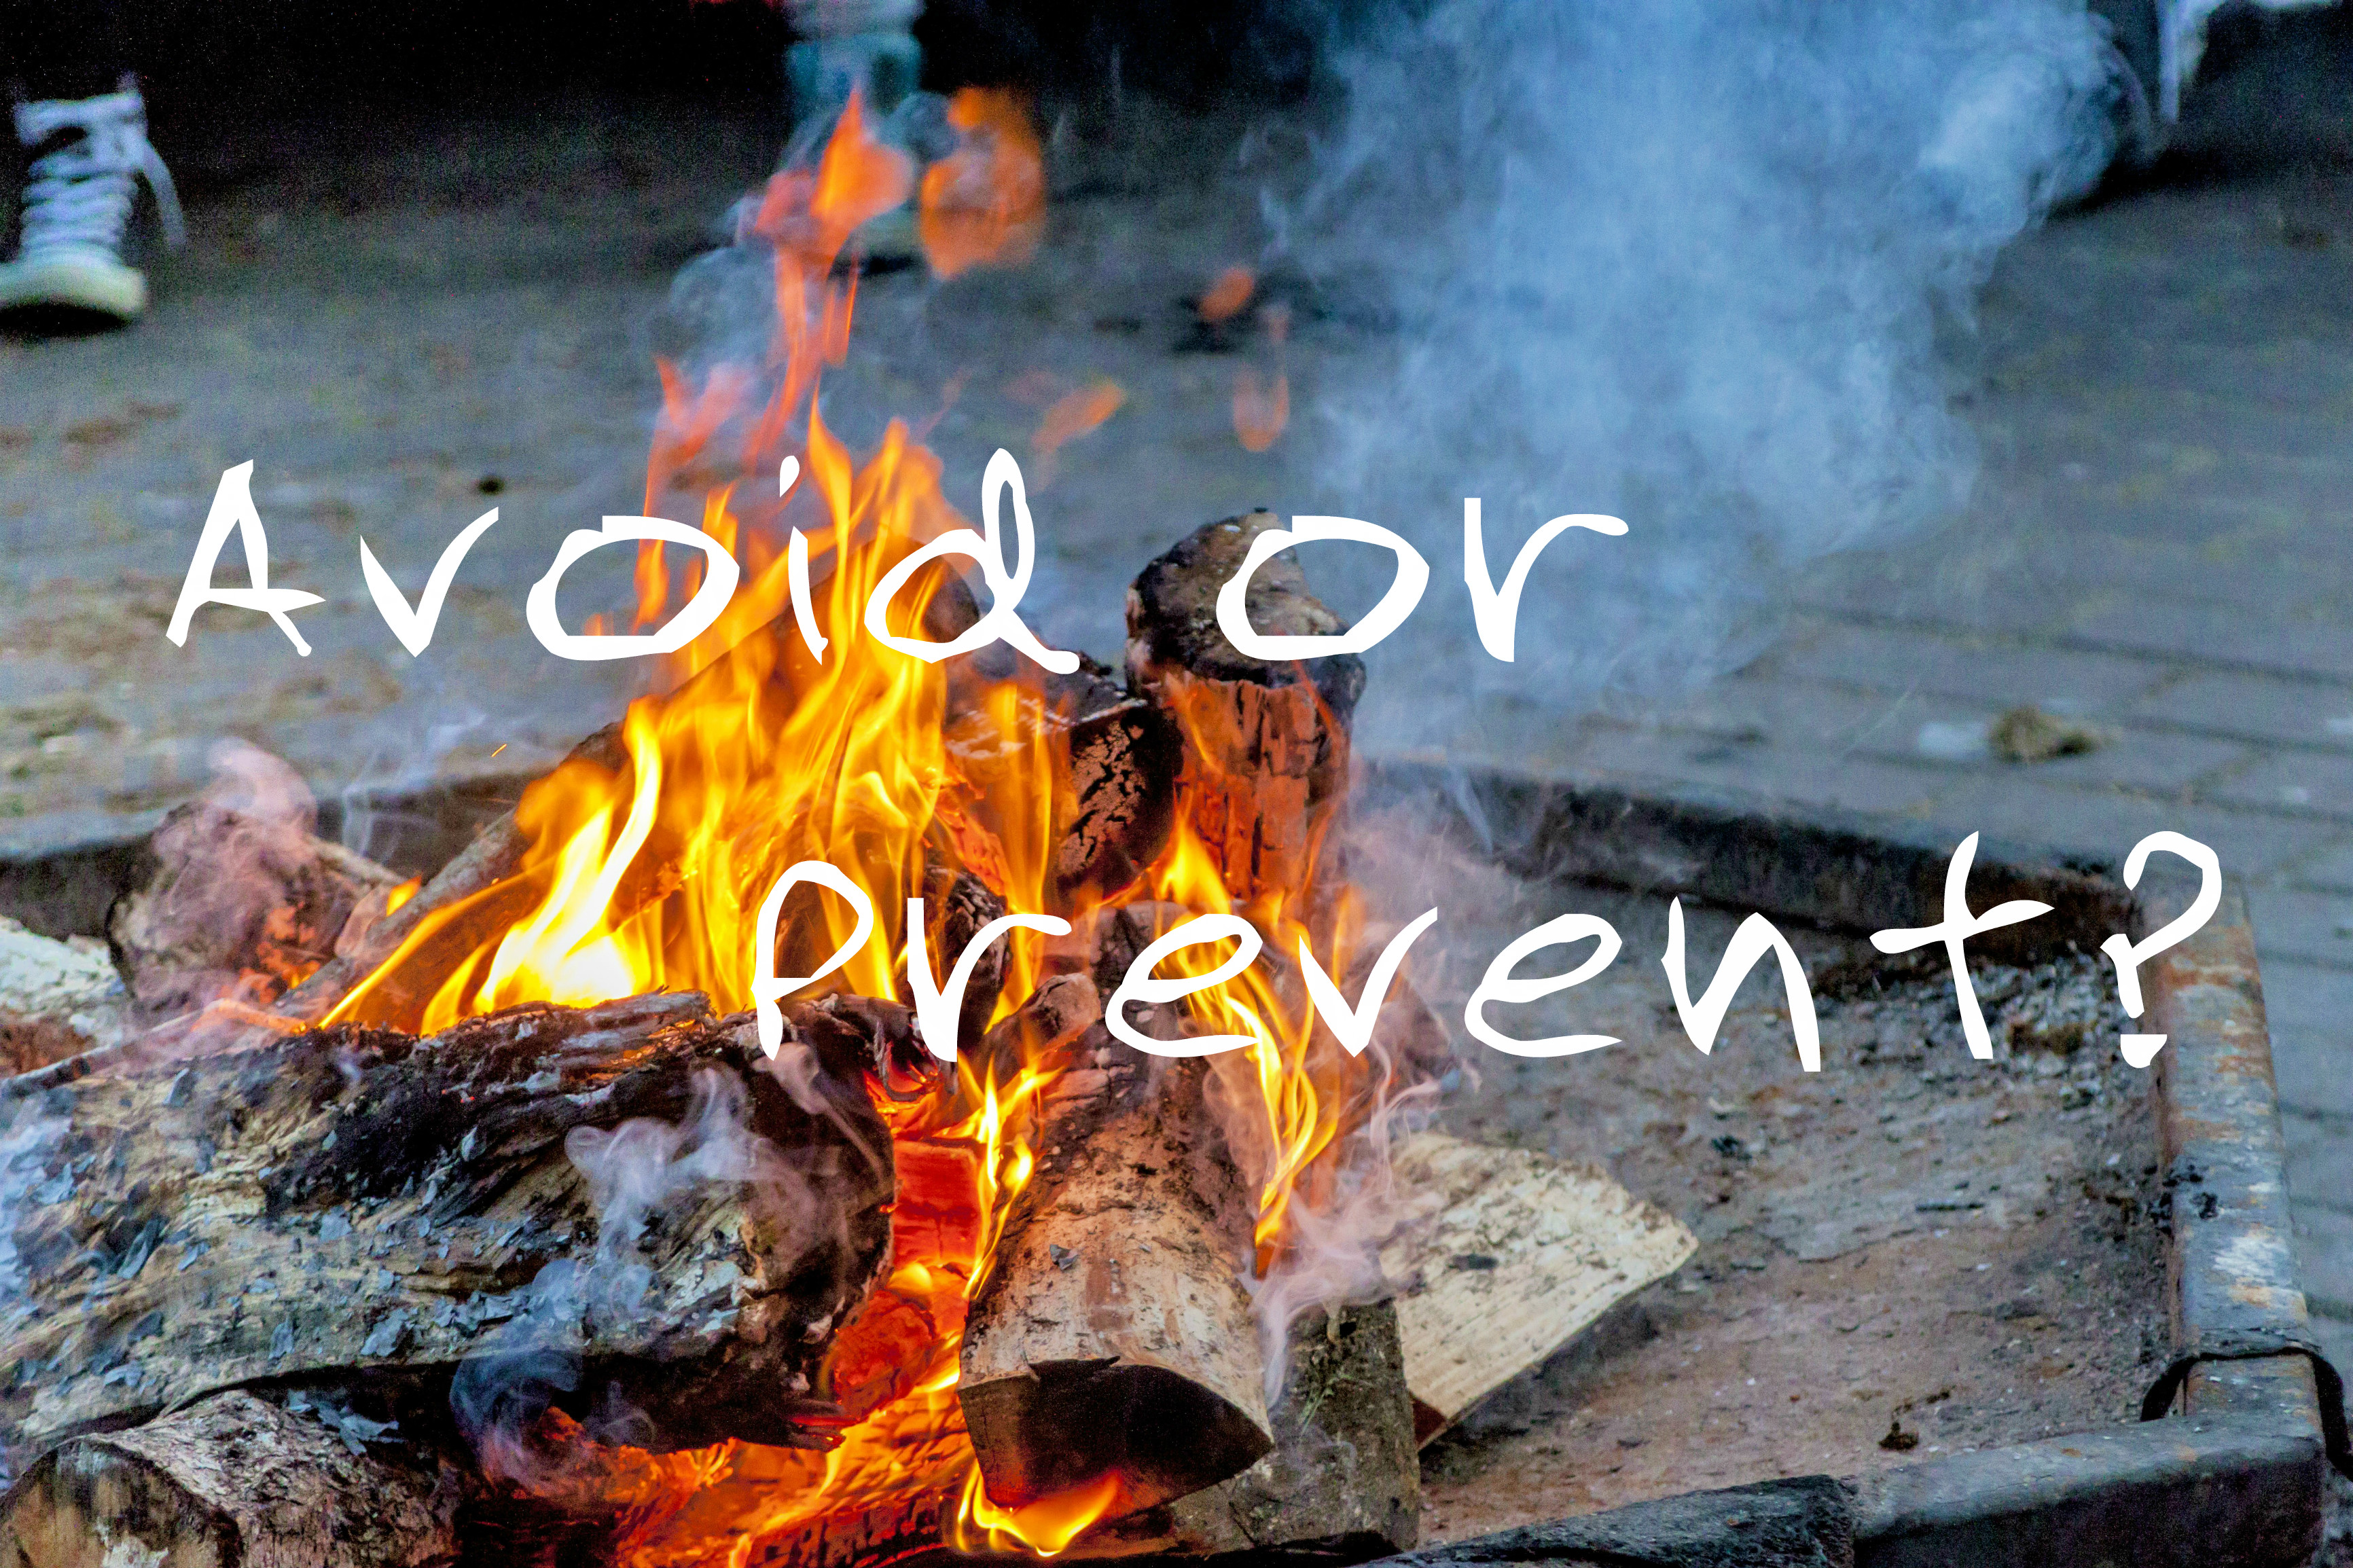 Avoid or Prevent?